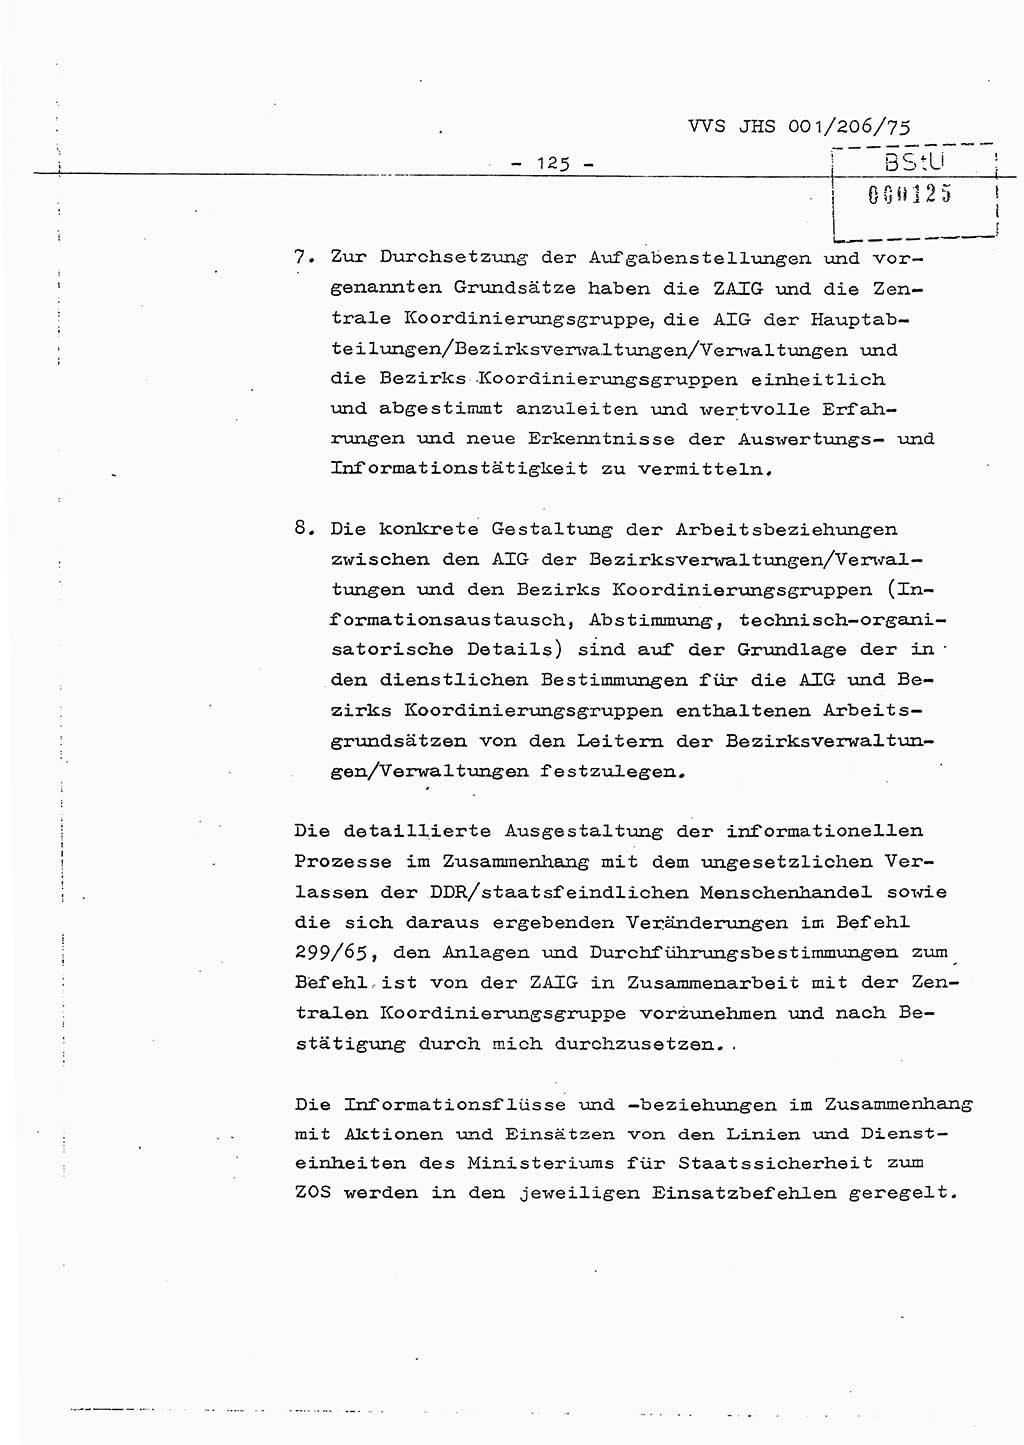 Dissertation Generalmajor Manfred Hummitzsch (Leiter der BV Leipzig), Generalmajor Heinz Fiedler (HA Ⅵ), Oberst Rolf Fister (HA Ⅸ), Ministerium für Staatssicherheit (MfS) [Deutsche Demokratische Republik (DDR)], Juristische Hochschule (JHS), Vertrauliche Verschlußsache (VVS) 001-206/75, Potsdam 1975, Seite 125 (Diss. MfS DDR JHS VVS 001-206/75 1975, S. 125)